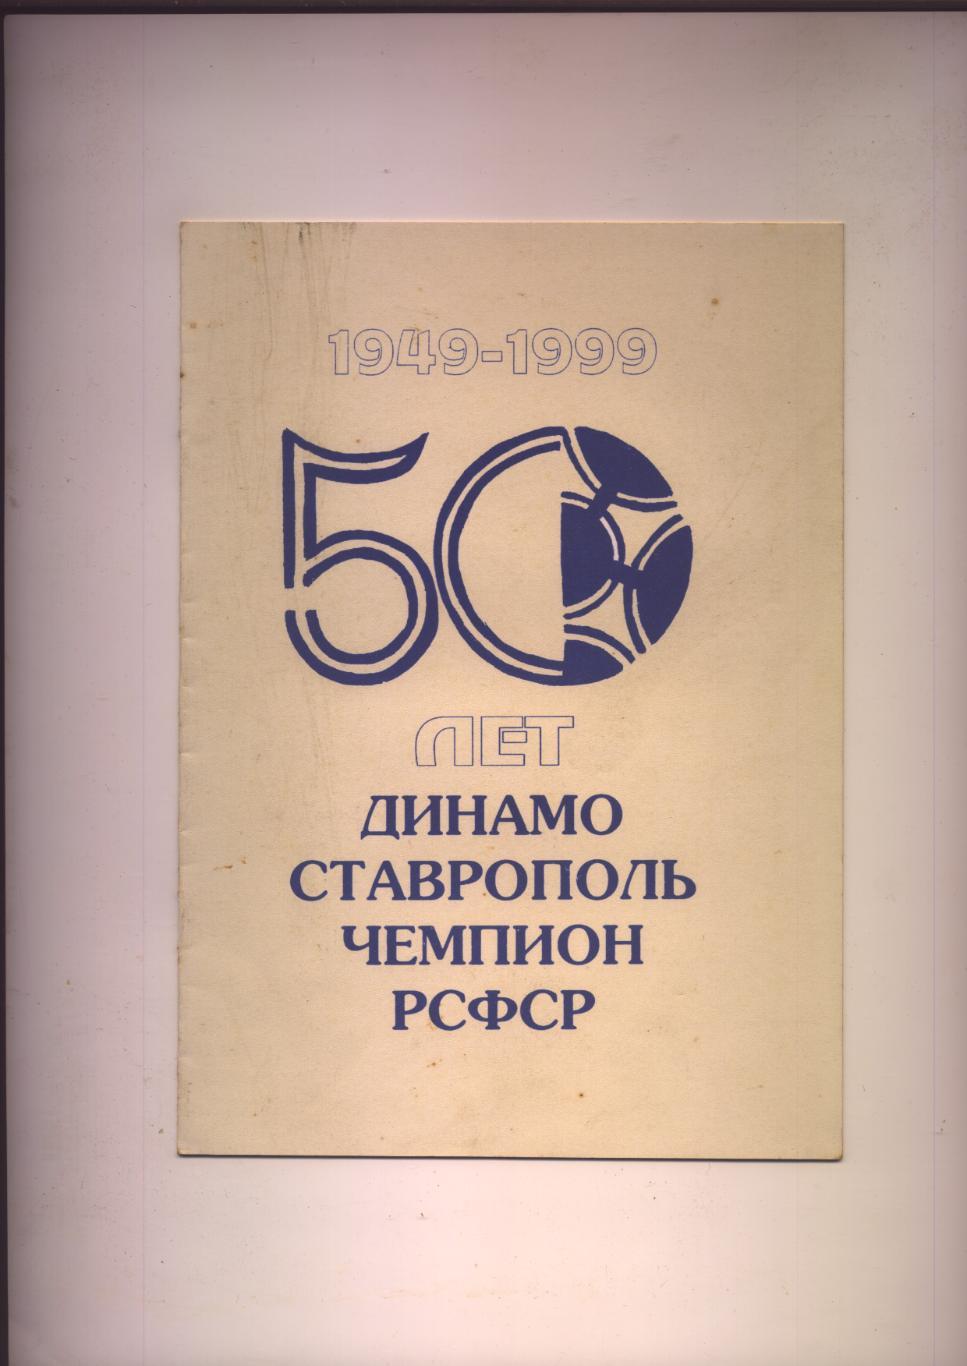 50 лет (1949-1999) Динамо Ставрополь Чемпион РСФСР